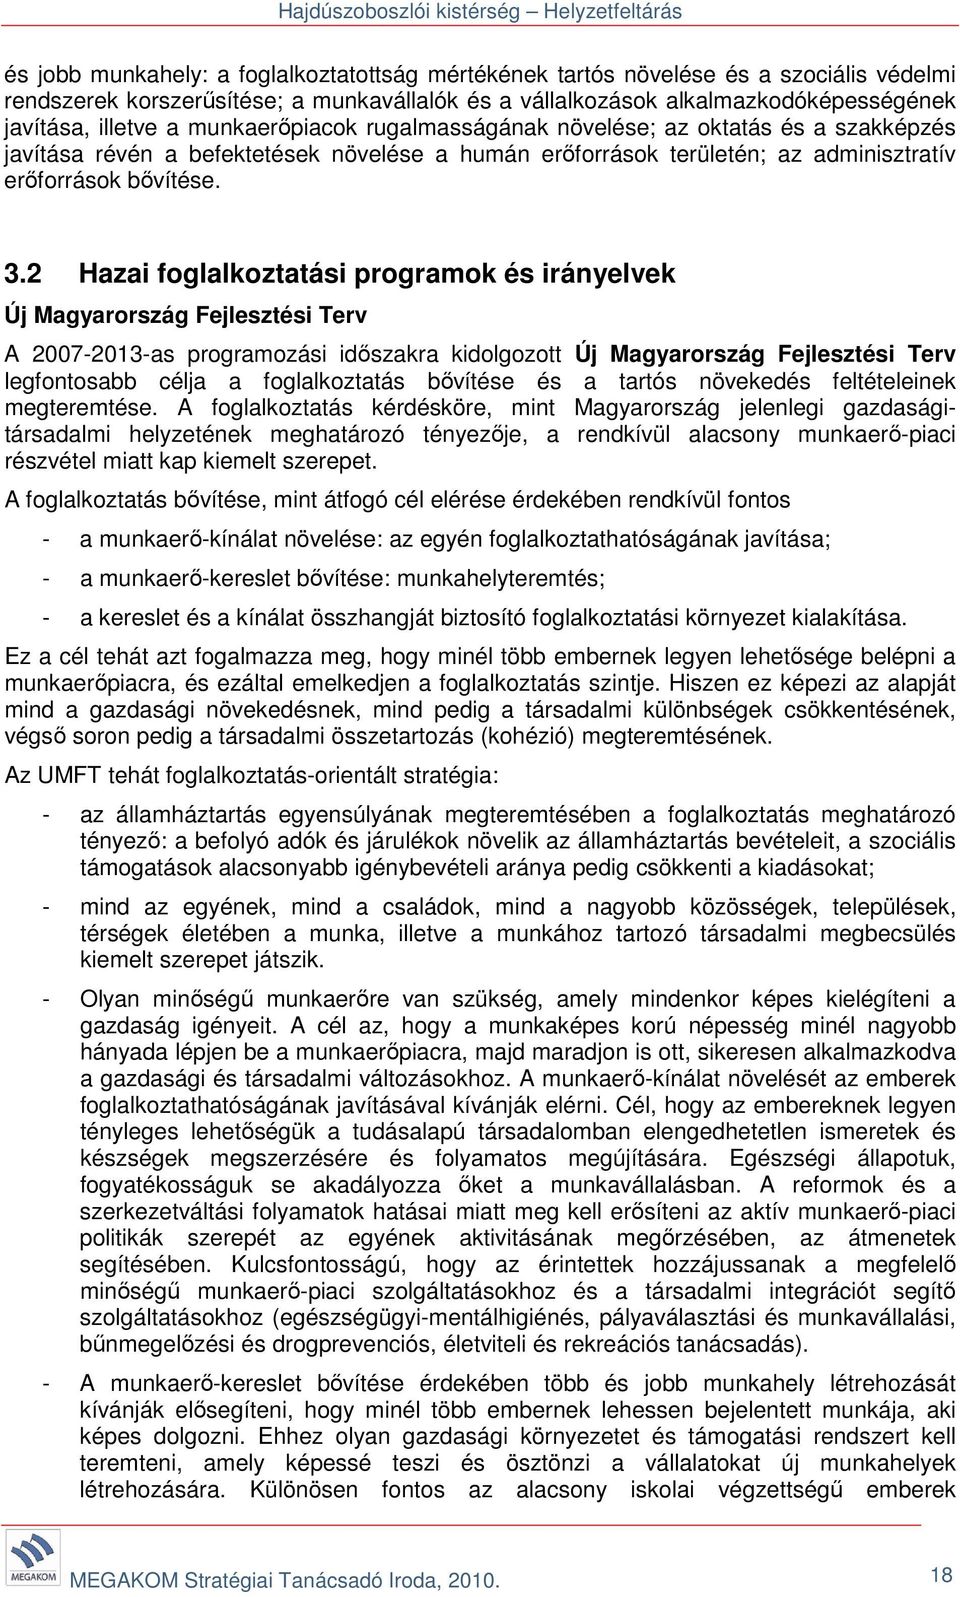 2 Hazai foglalkoztatási programok és irányelvek Új Magyarország Fejlesztési Terv A 2007-2013-as programozási időszakra kidolgozott Új Magyarország Fejlesztési Terv legfontosabb célja a foglalkoztatás